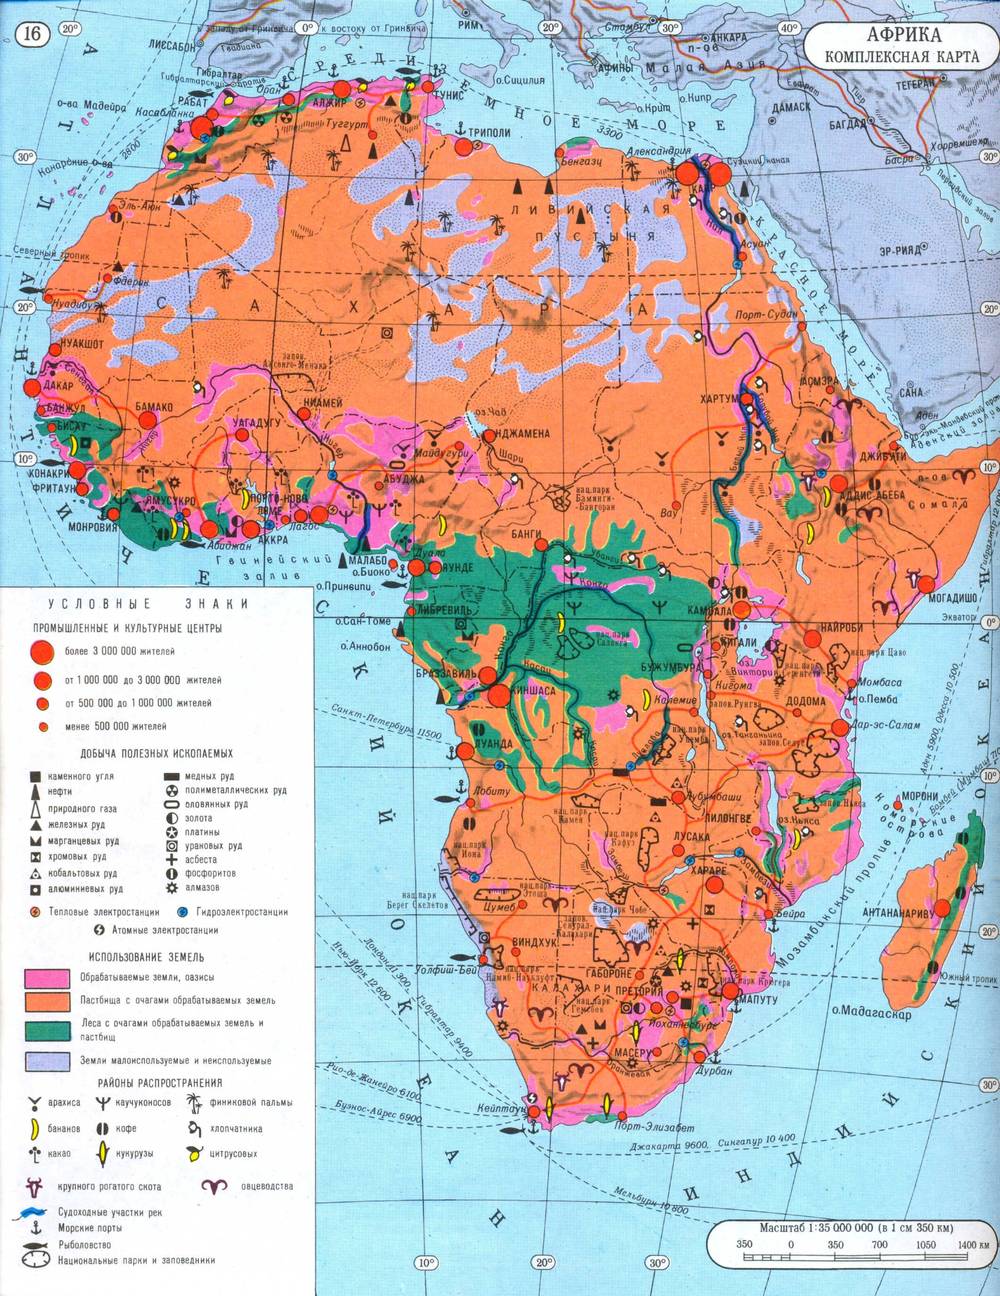 Атлас на карте африки. Карта Африки 7 класс атлас по географии. Комплексная карта Африки 7 класс. Физическая карта Африки 7 класс атлас. Комплексная карта Африки 7 класс атлас.